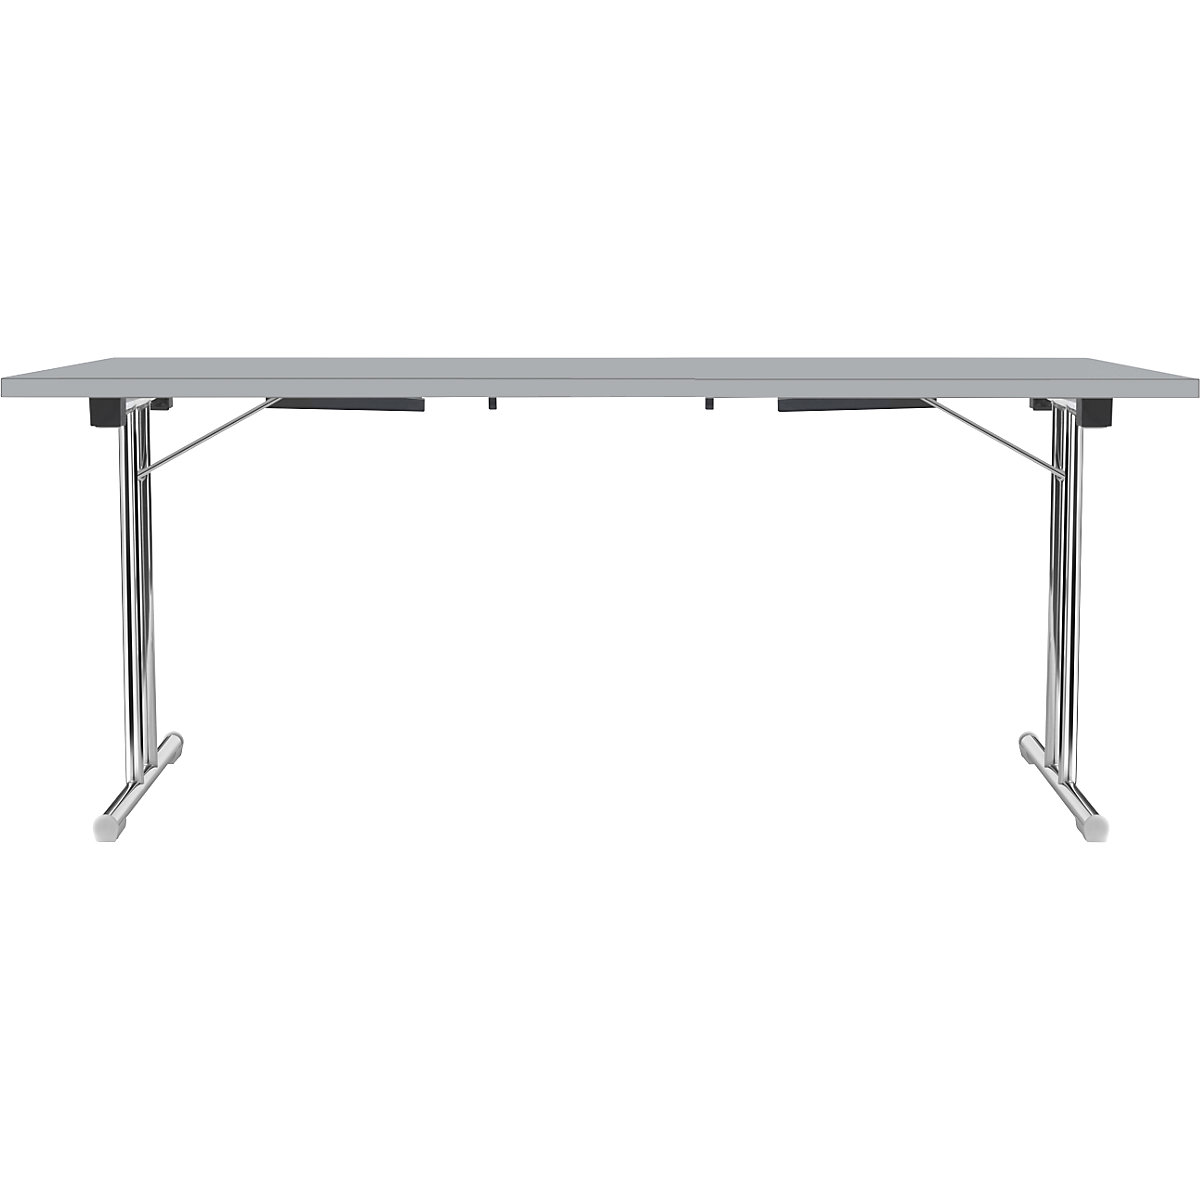 Zložljiva miza z dvojnim podnožjem v obliki črke T, ogrodje iz okrogle jeklene cevi, kromirano, svetlo siva/svetlo siva, ŠxG 1800 x 800 mm-1